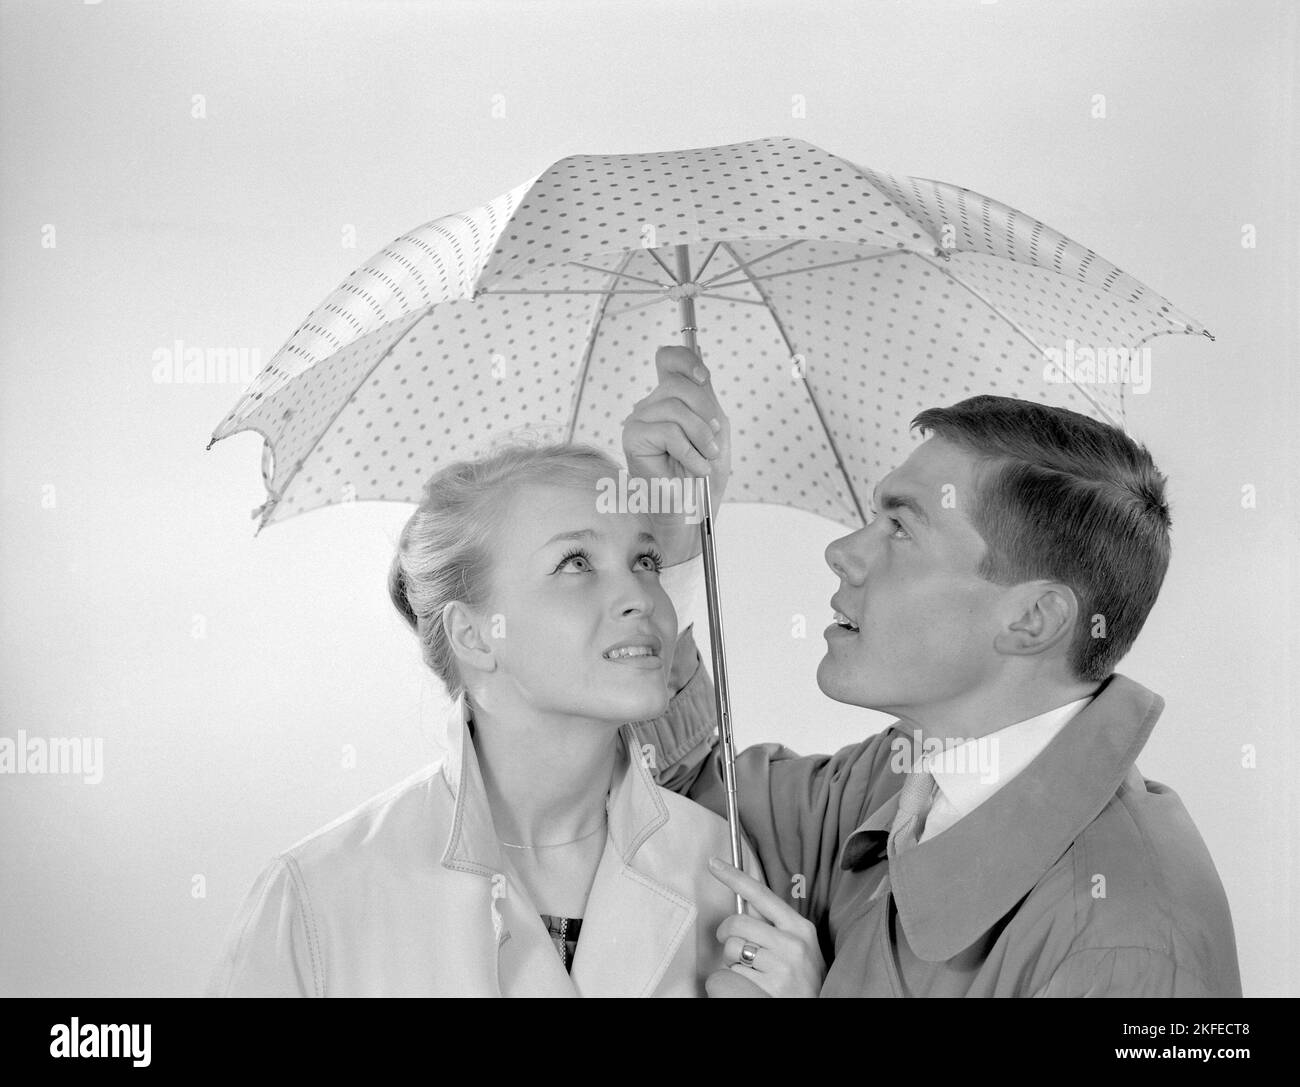 1960s couple. Un couple souriant se tient sous un parapluie. Suède 1960 Conard réf. 4254 Banque D'Images